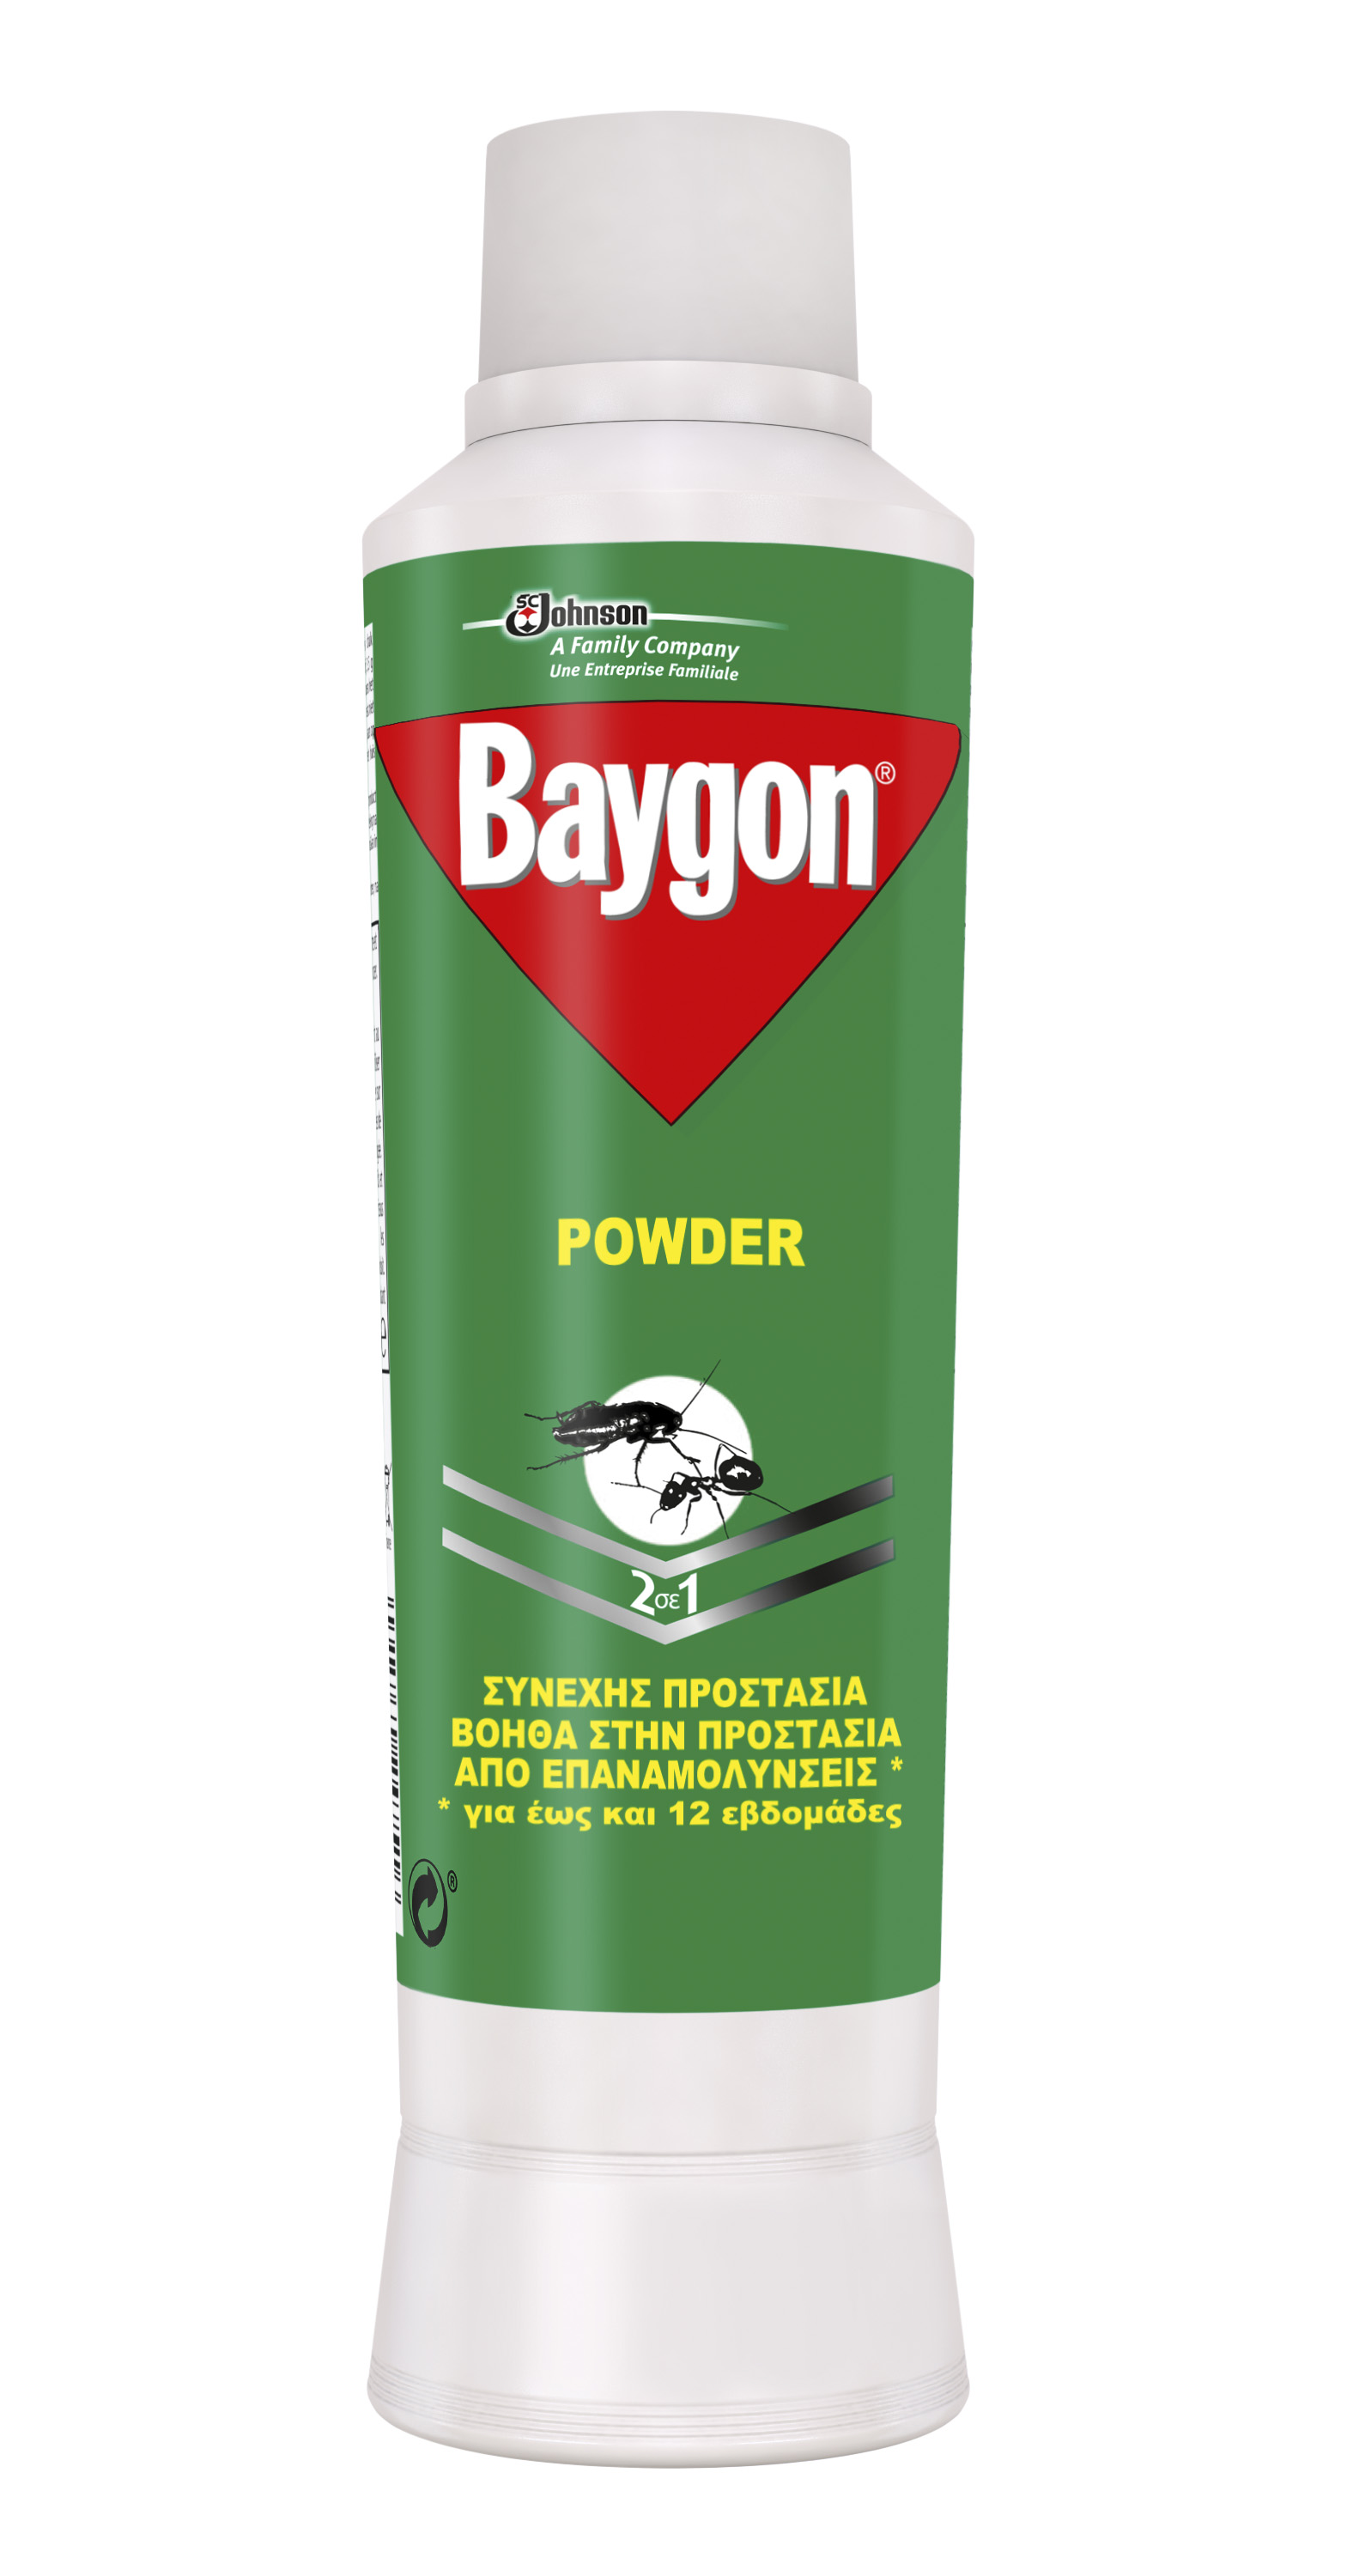 BAYGON POWDER 250GR